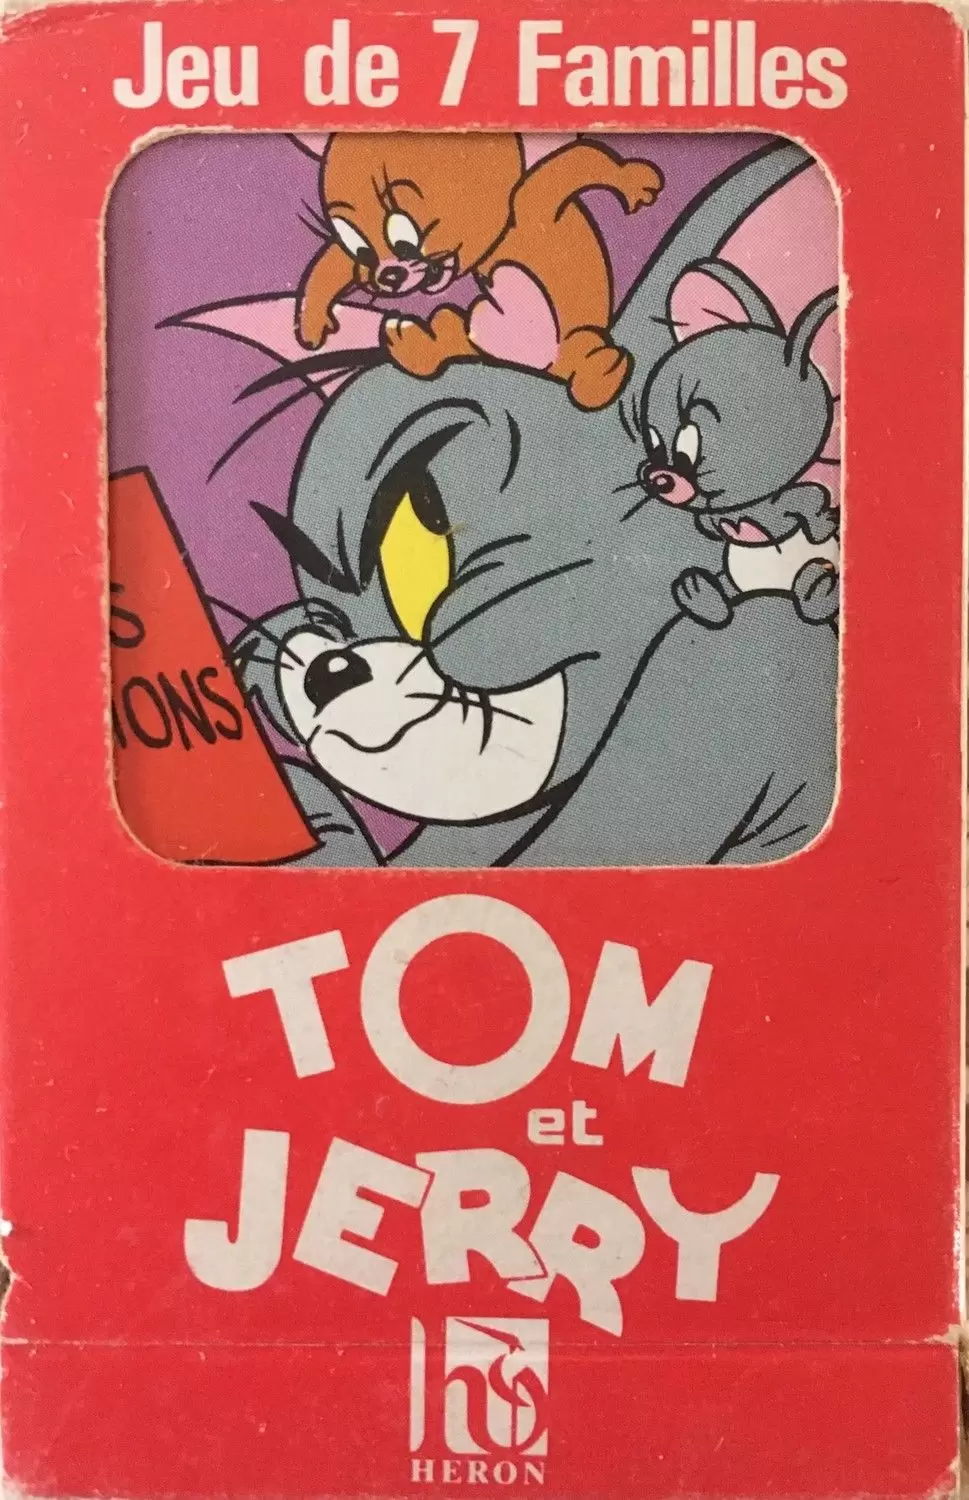 Jeu des 7 Familles - Tom et Jerry